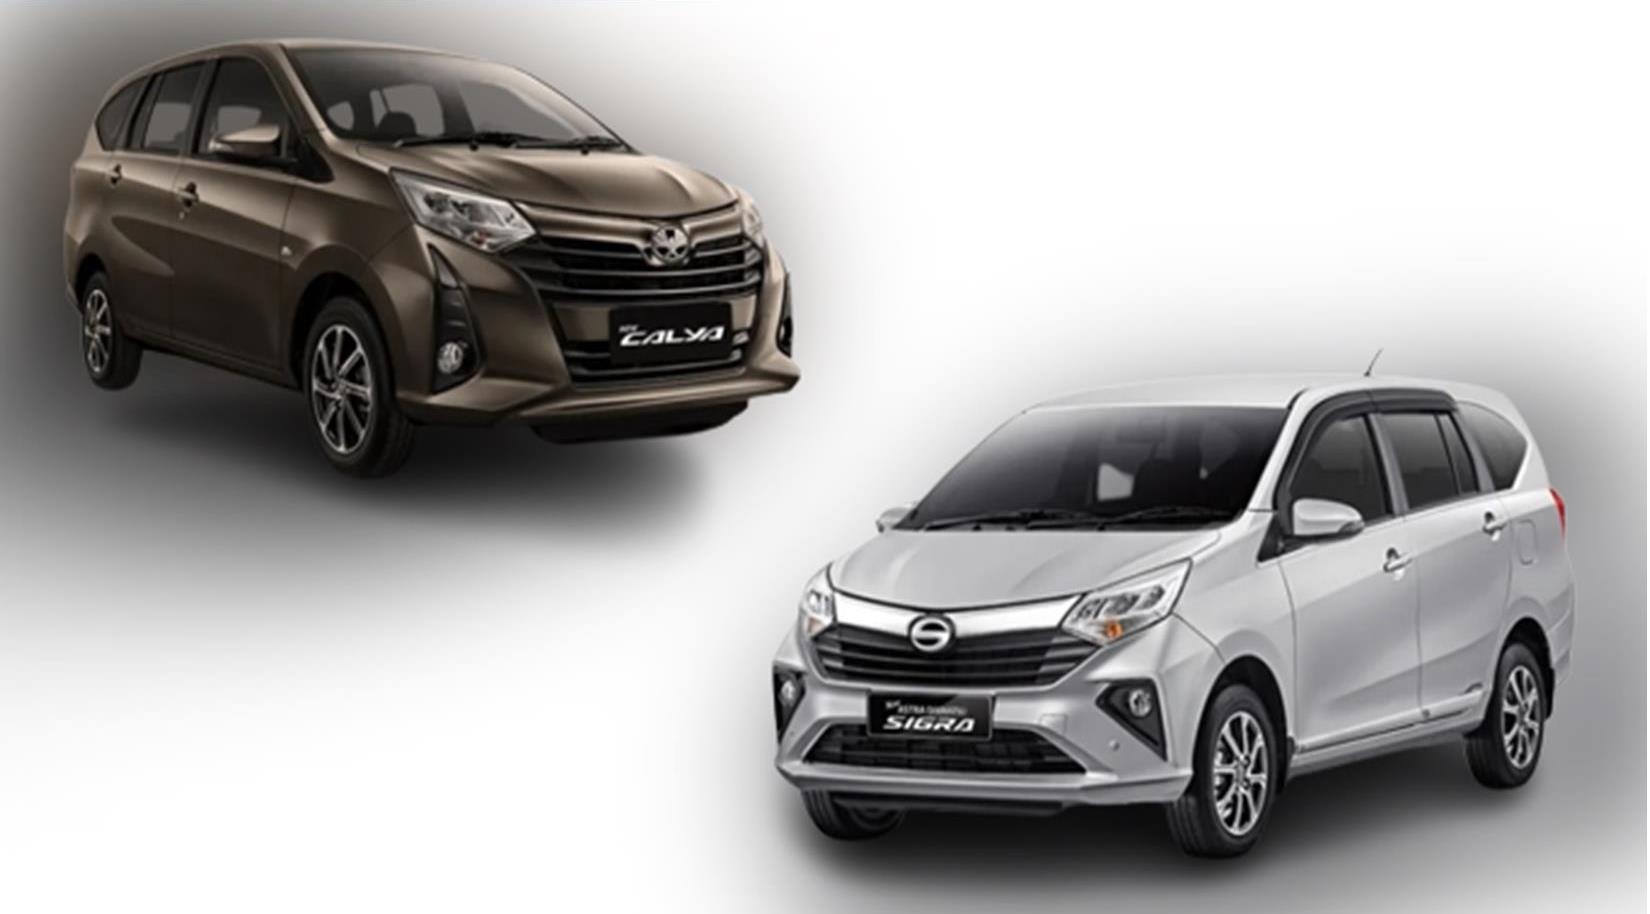 Daihatsu Sigra Vs Toyota Calya ‘Si Anak Kembar’ yang Laris di Pasaran, Mana Lebih Baik?